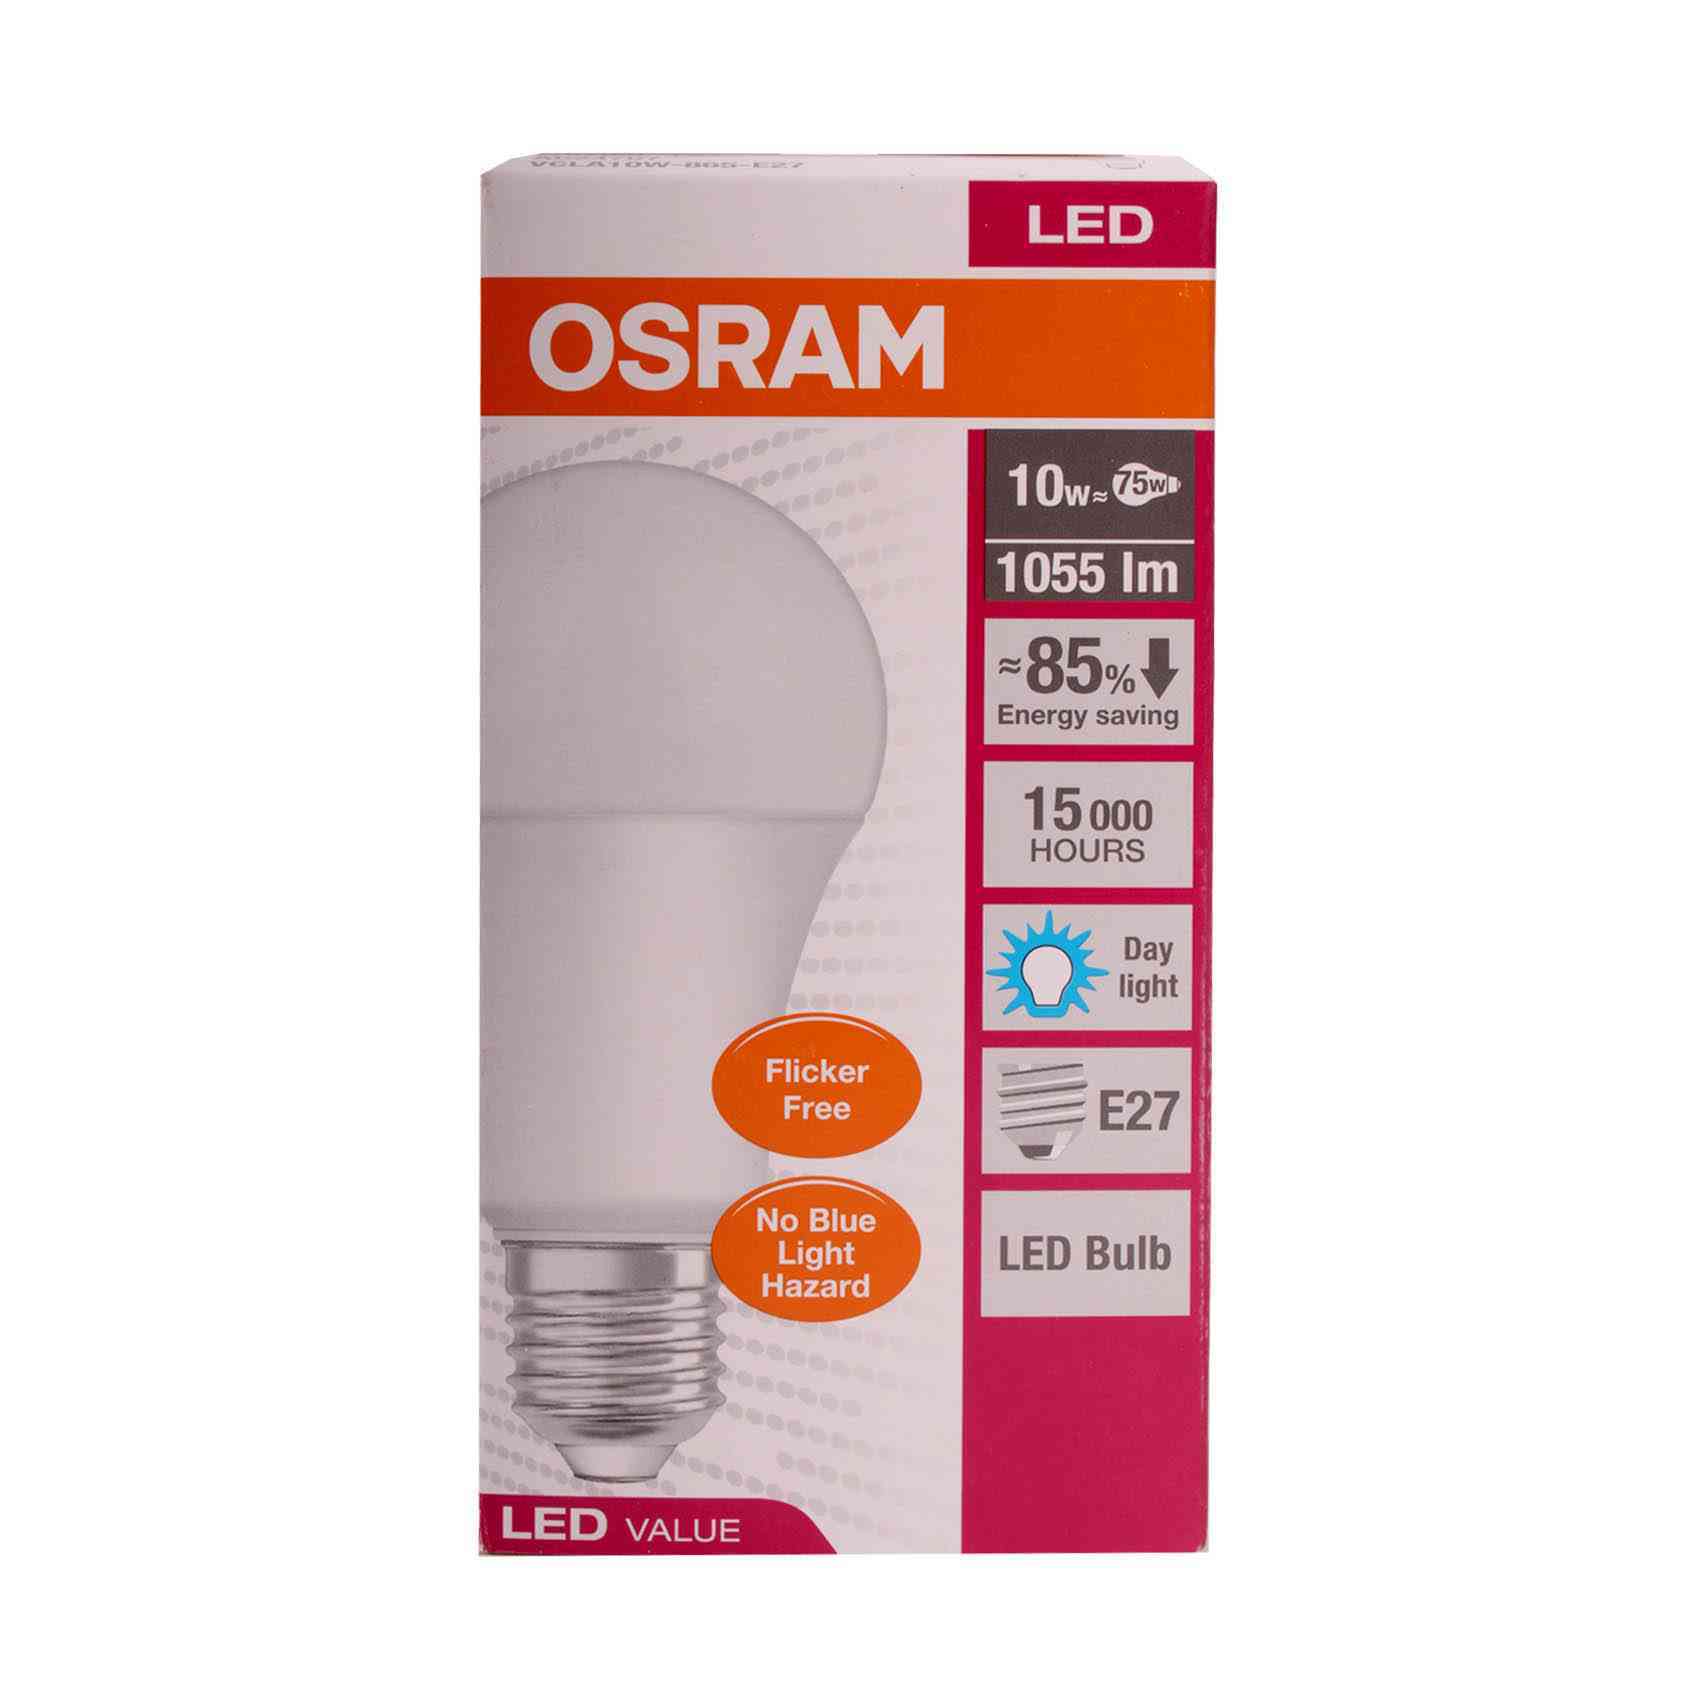 Buy Osram E27 LED Bulb 10w 1055lm 15000h 85% Energy Saving Day Light Online